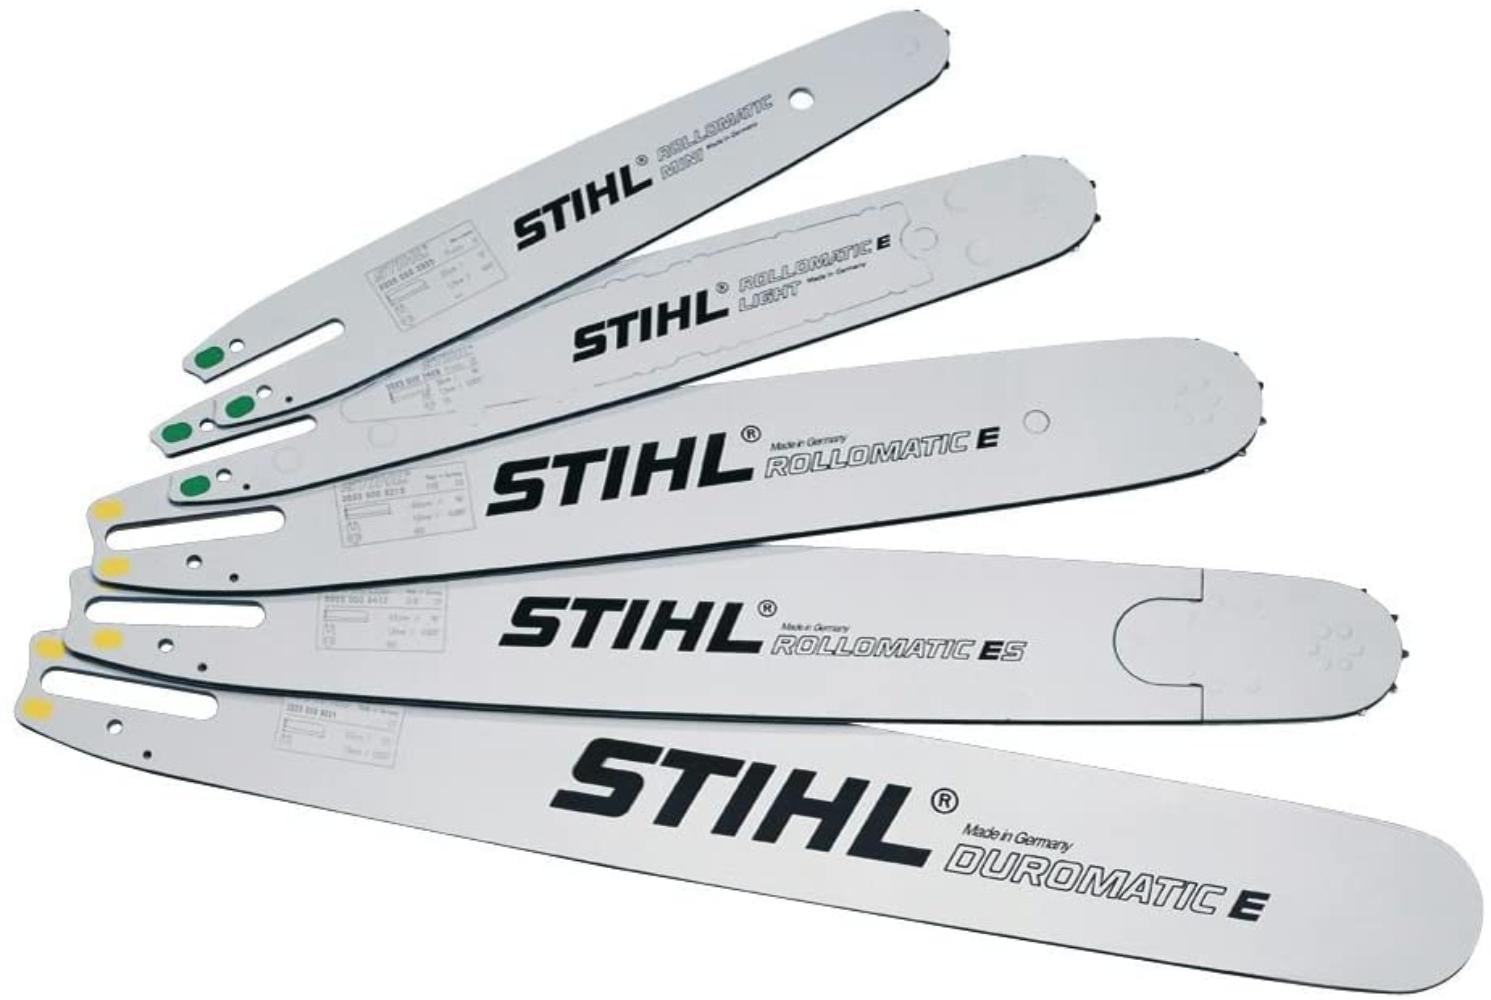 STIHL 3005 000 3905 Picco Narrow Rollomatic Chain Saw Bar, 12-Inch, 12-Inch  long By Brand Stihl